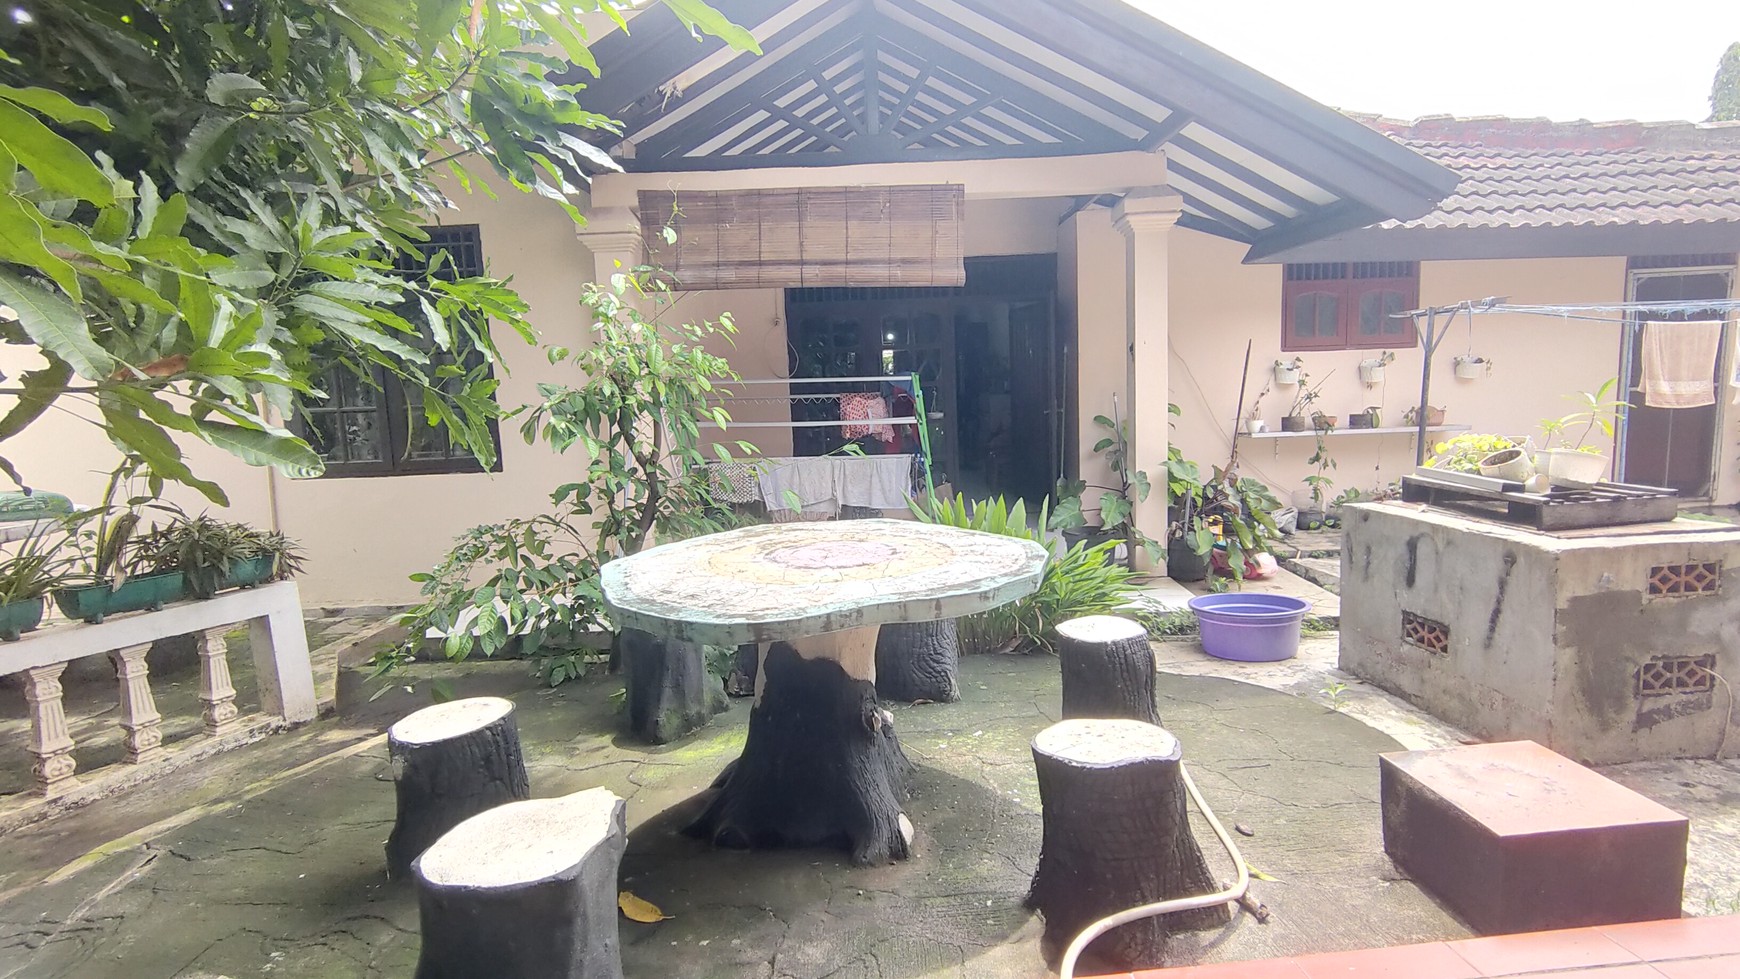 Rumah Tangerang Area - Dalam Komplek Perumahan Bangun Reksa Indah Tangerang - Aman Nyaman - Dijual Cepat & Murah - Cocok untuk Usaha Rumah Kost 